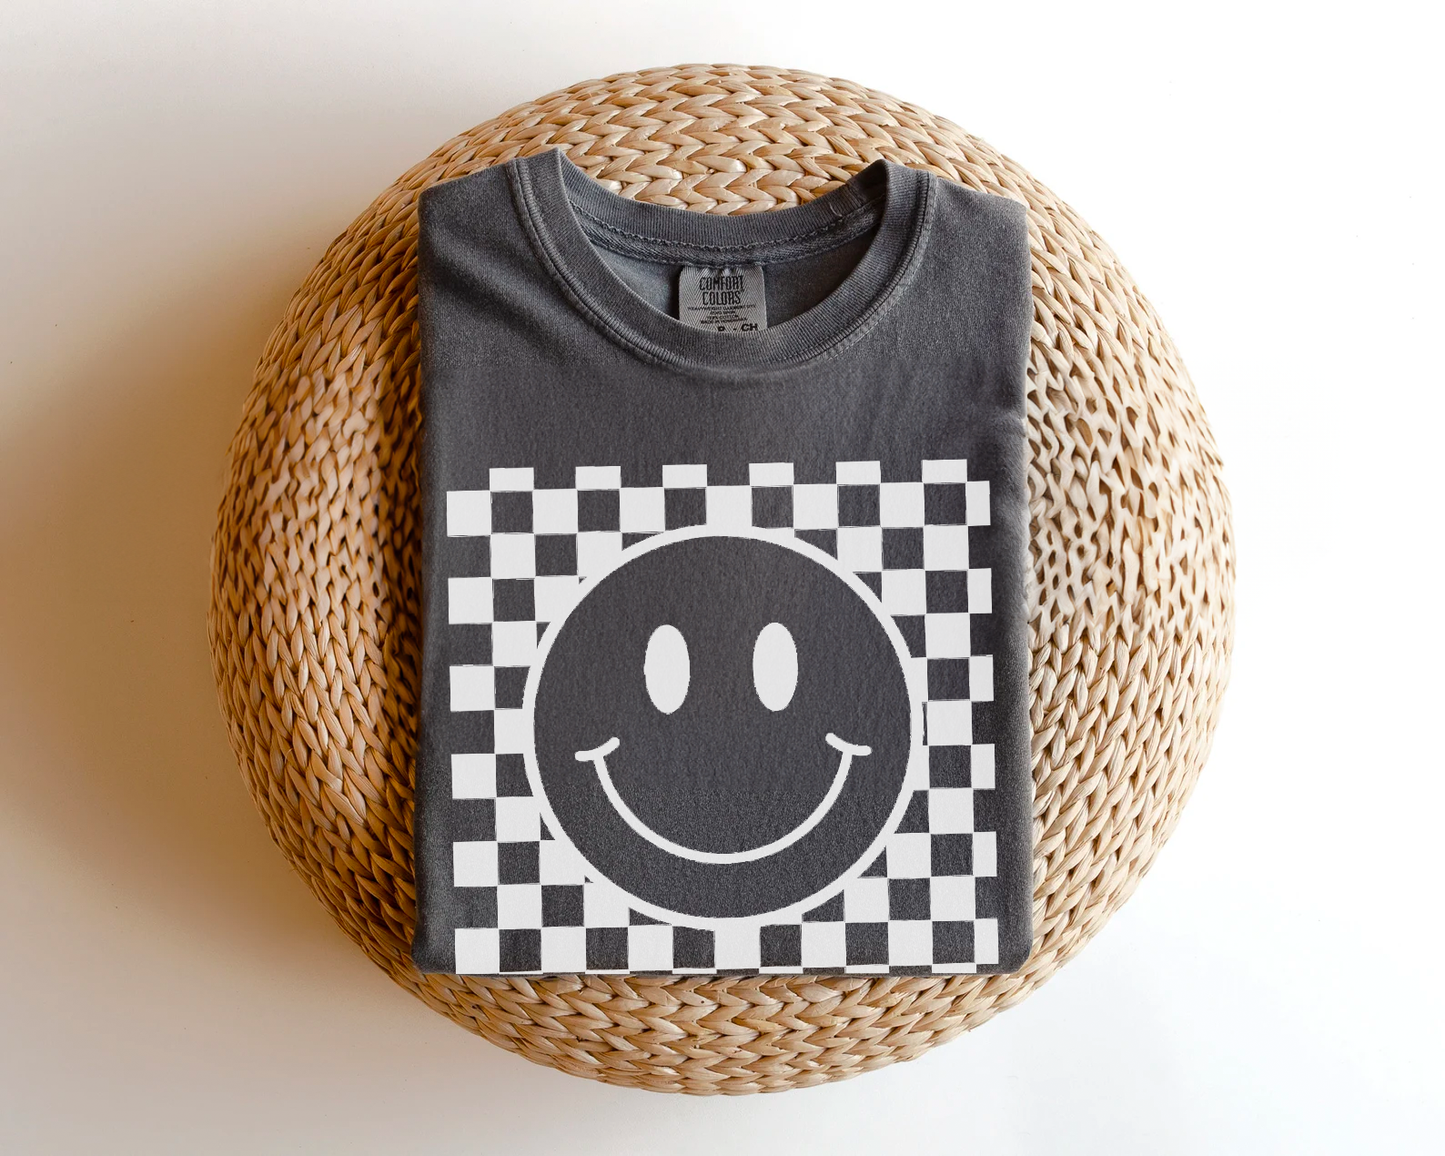 Checkered Smiley Face Tee